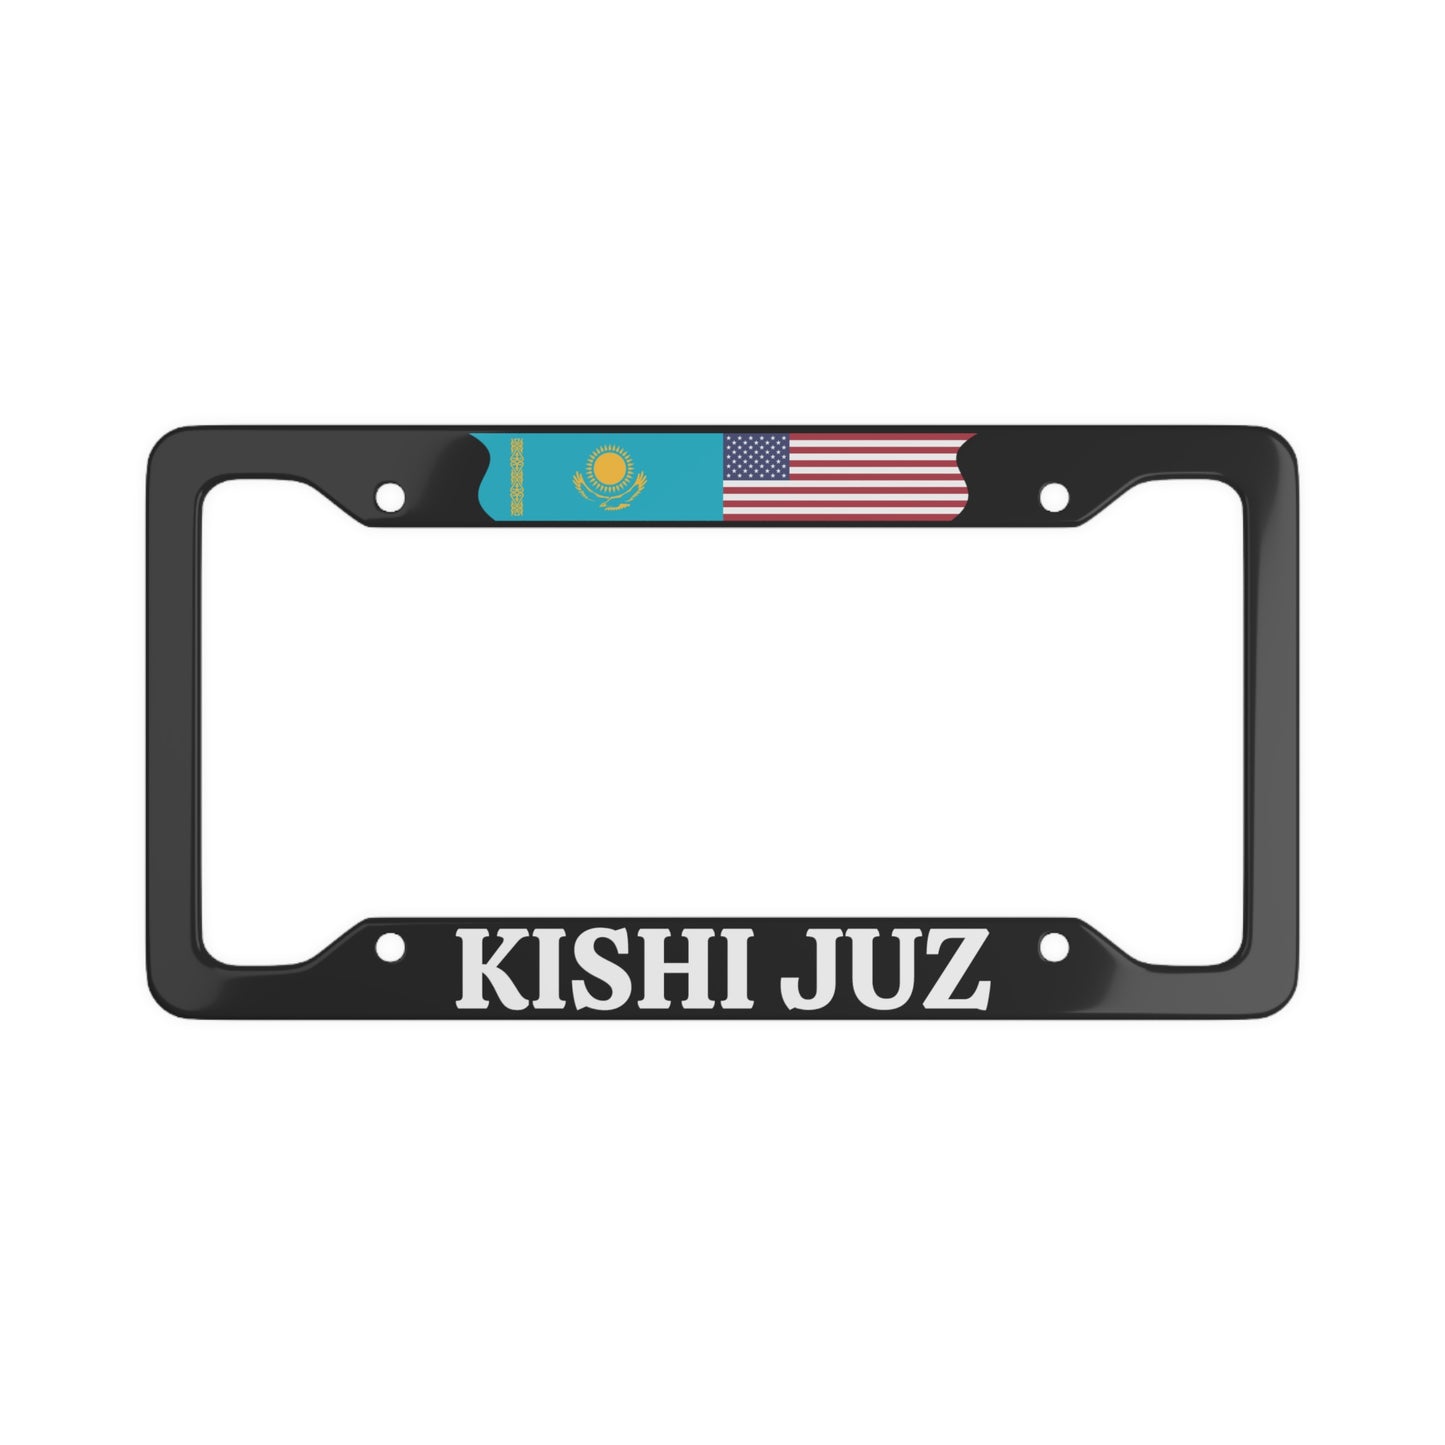 KISHI JUZ with flag License Plate Frame